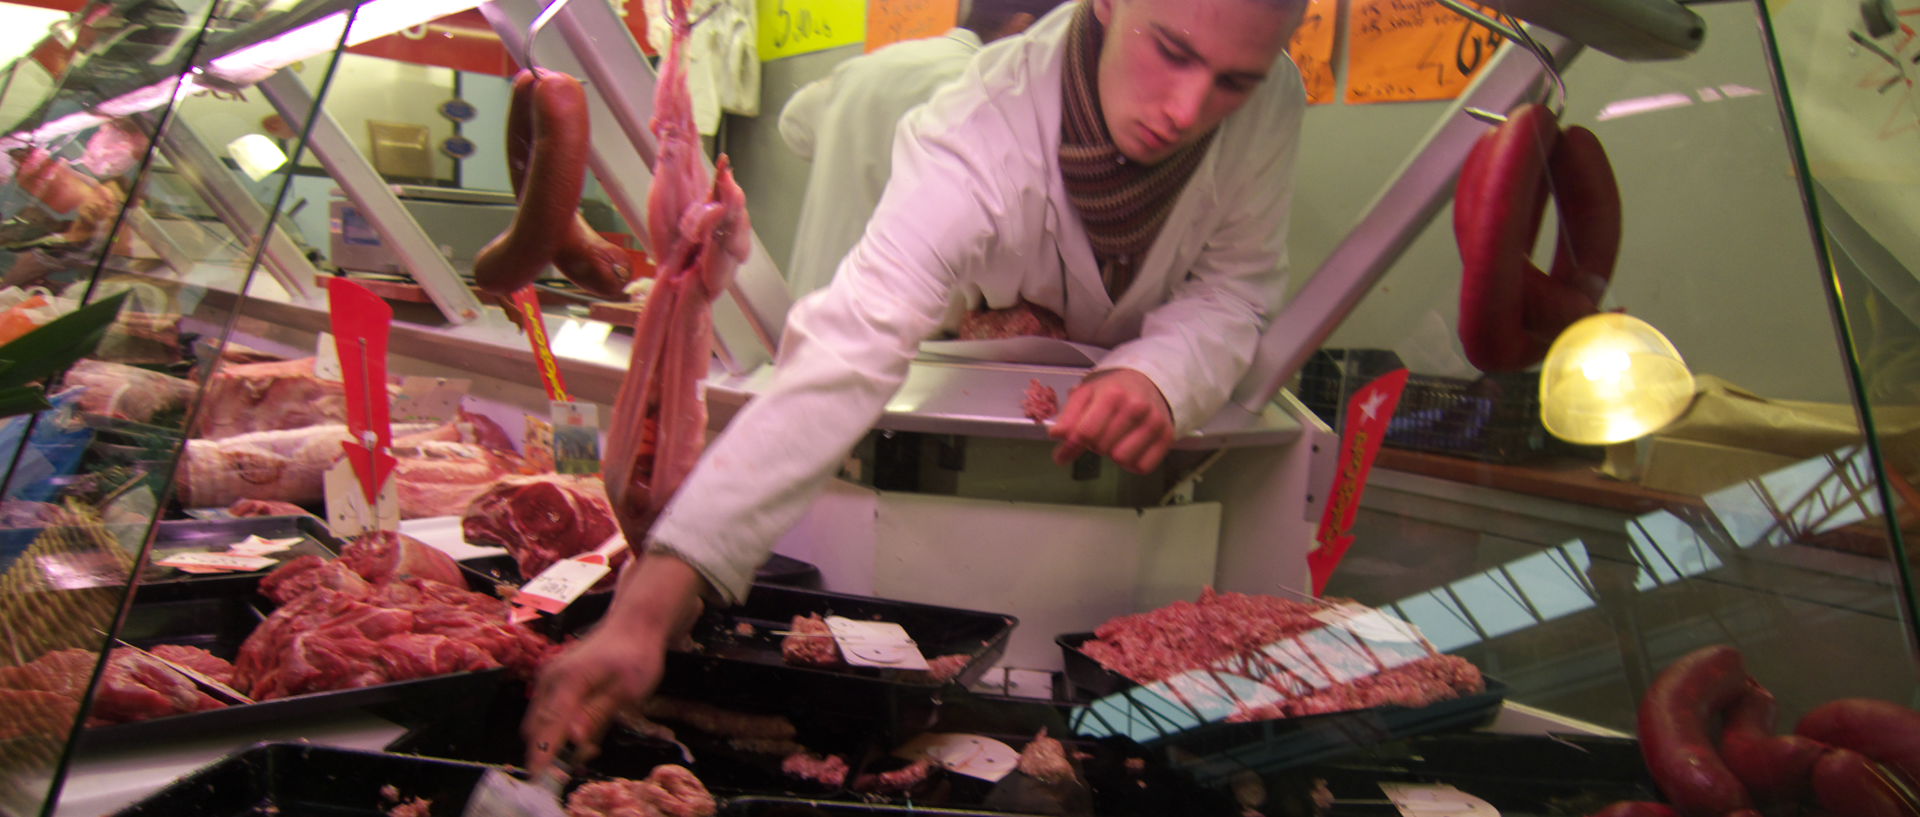 Dimanche 30 novembre 2008, boucherie Deblock, marché de Wazemmes, à Lille.